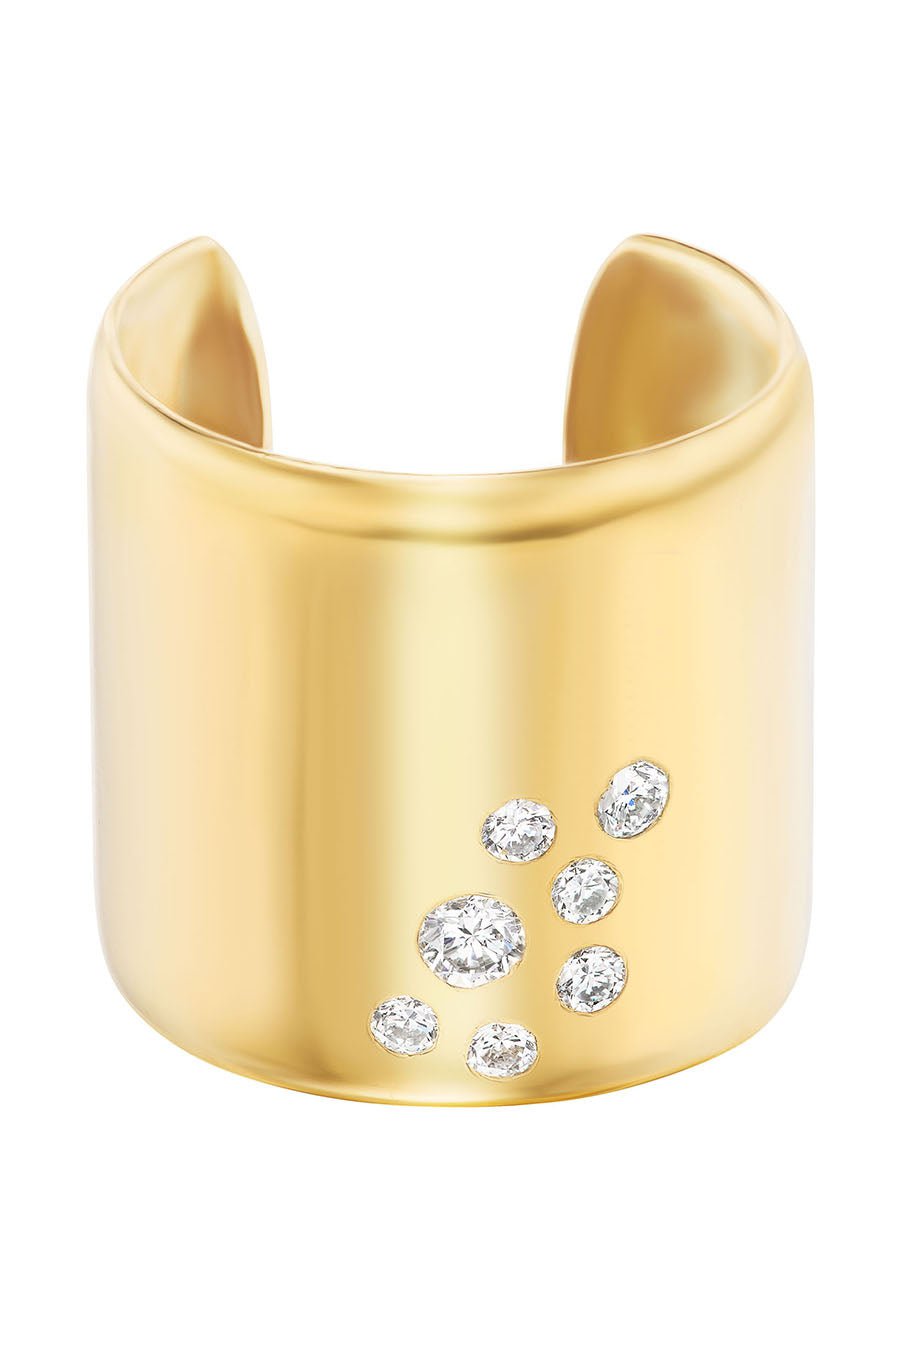 UNIFORM OBJECT-Diamond Stone Cuff Ring-YELLOW GOLD